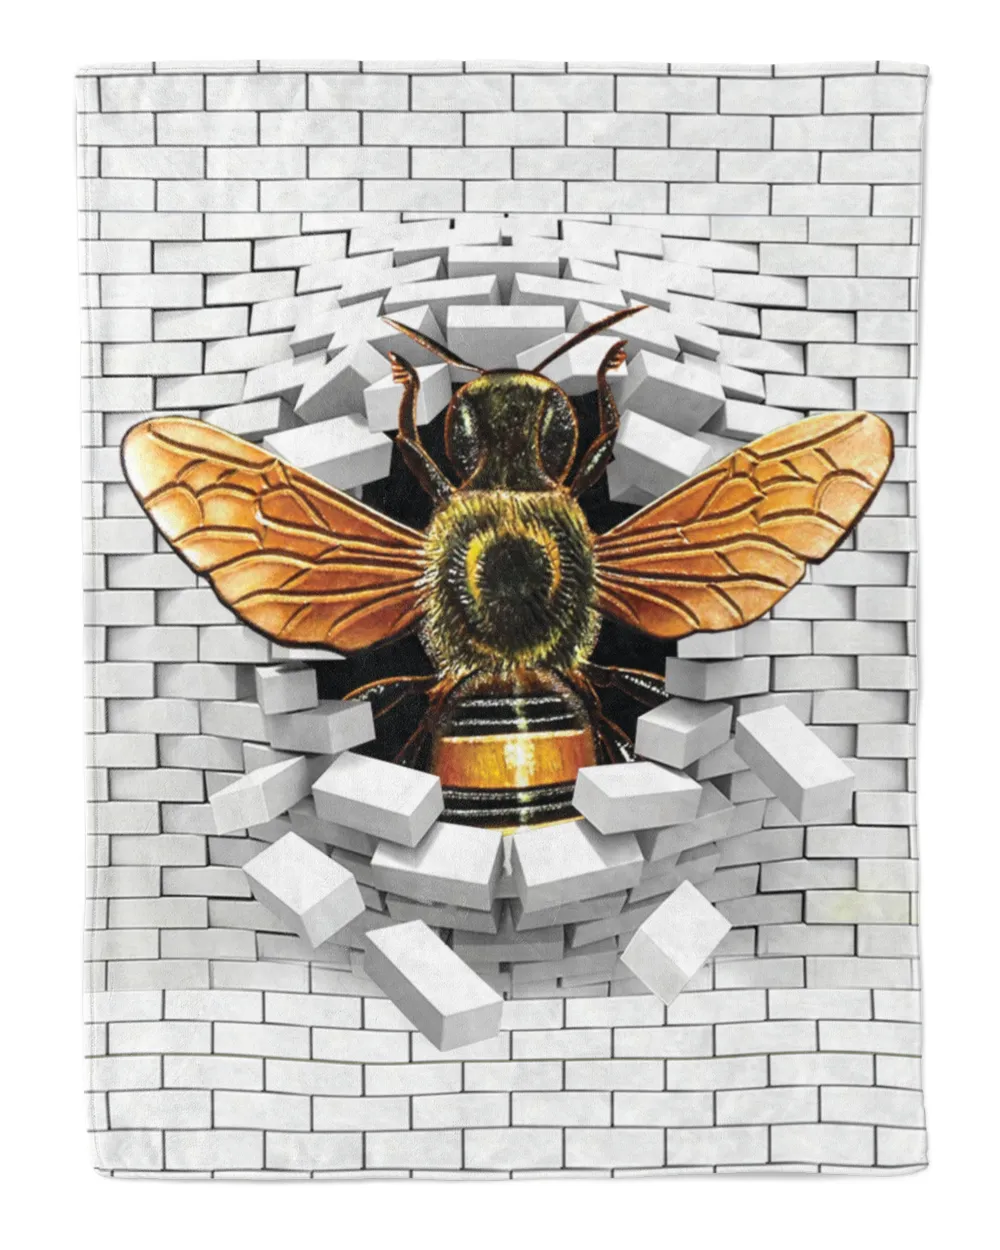 Bee broken brick